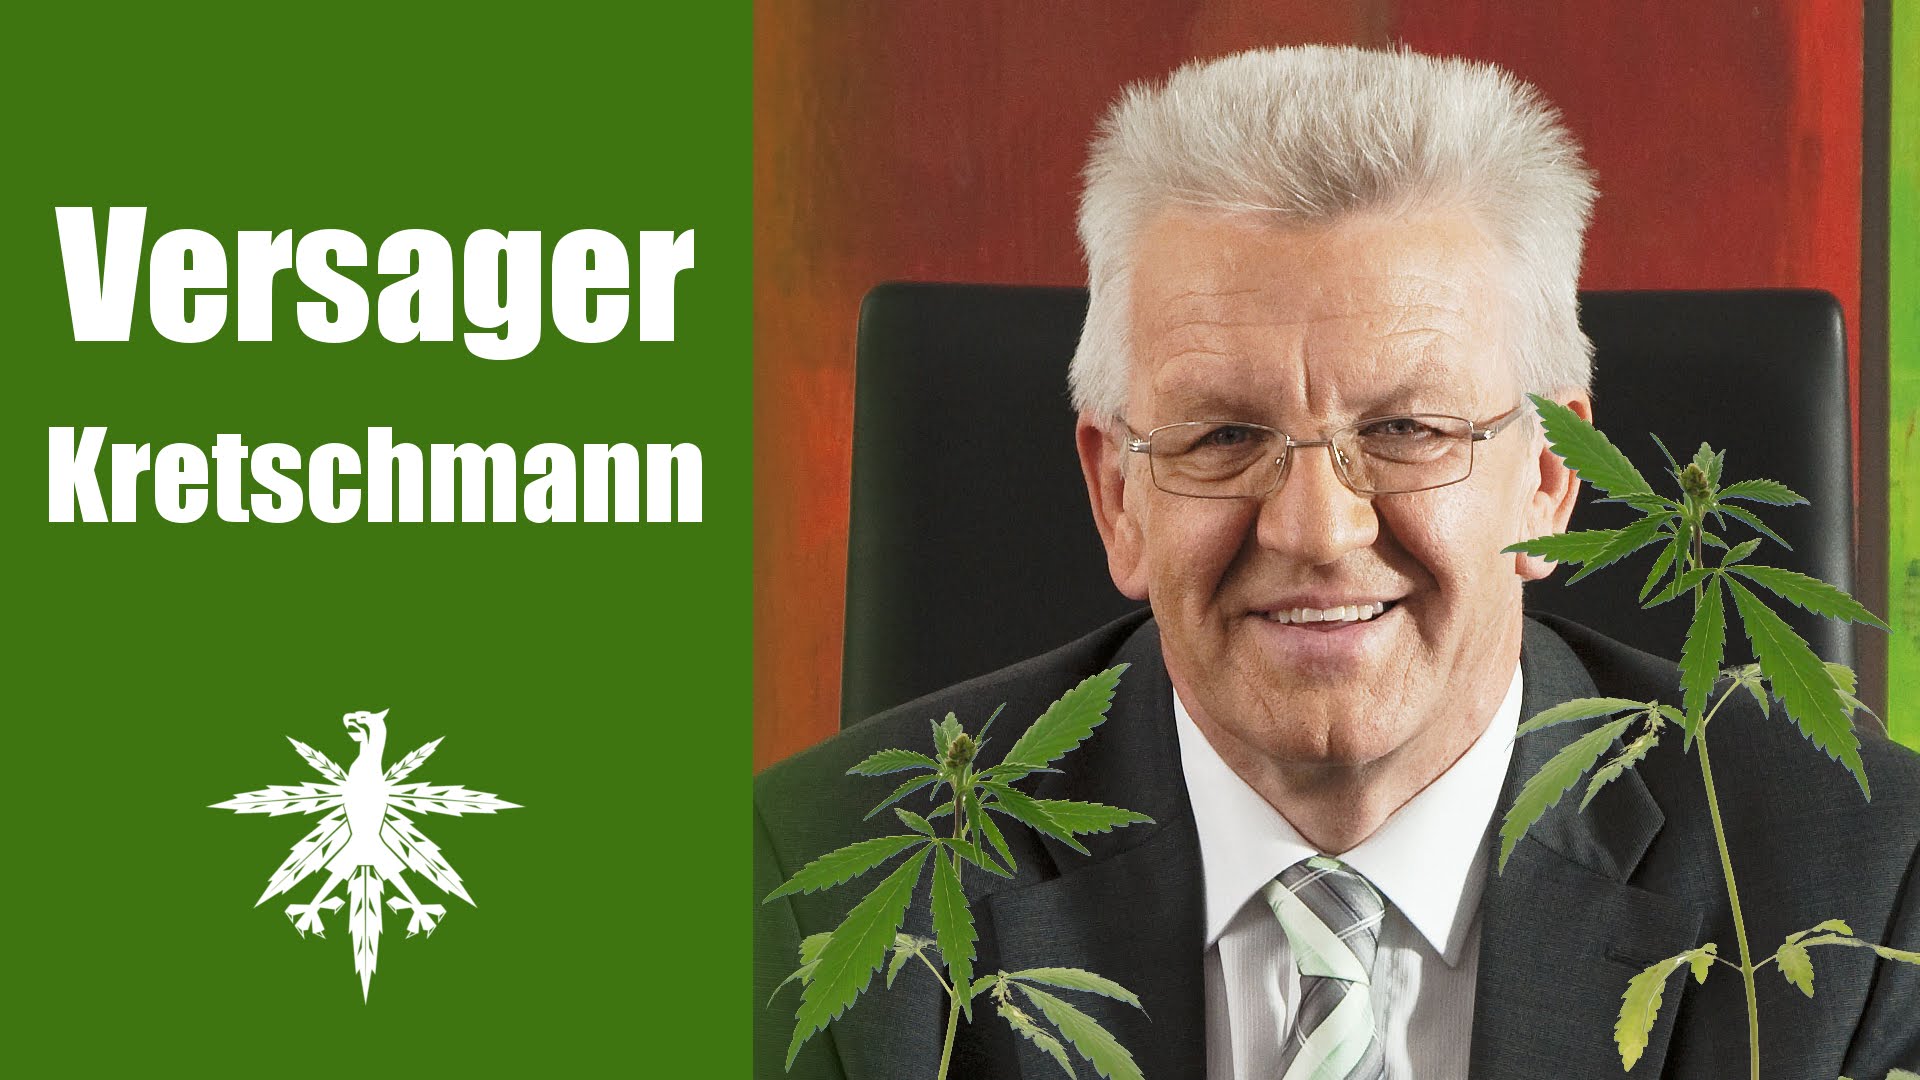 Versager Kretschmann & massig medical marijuana | DHV News #67